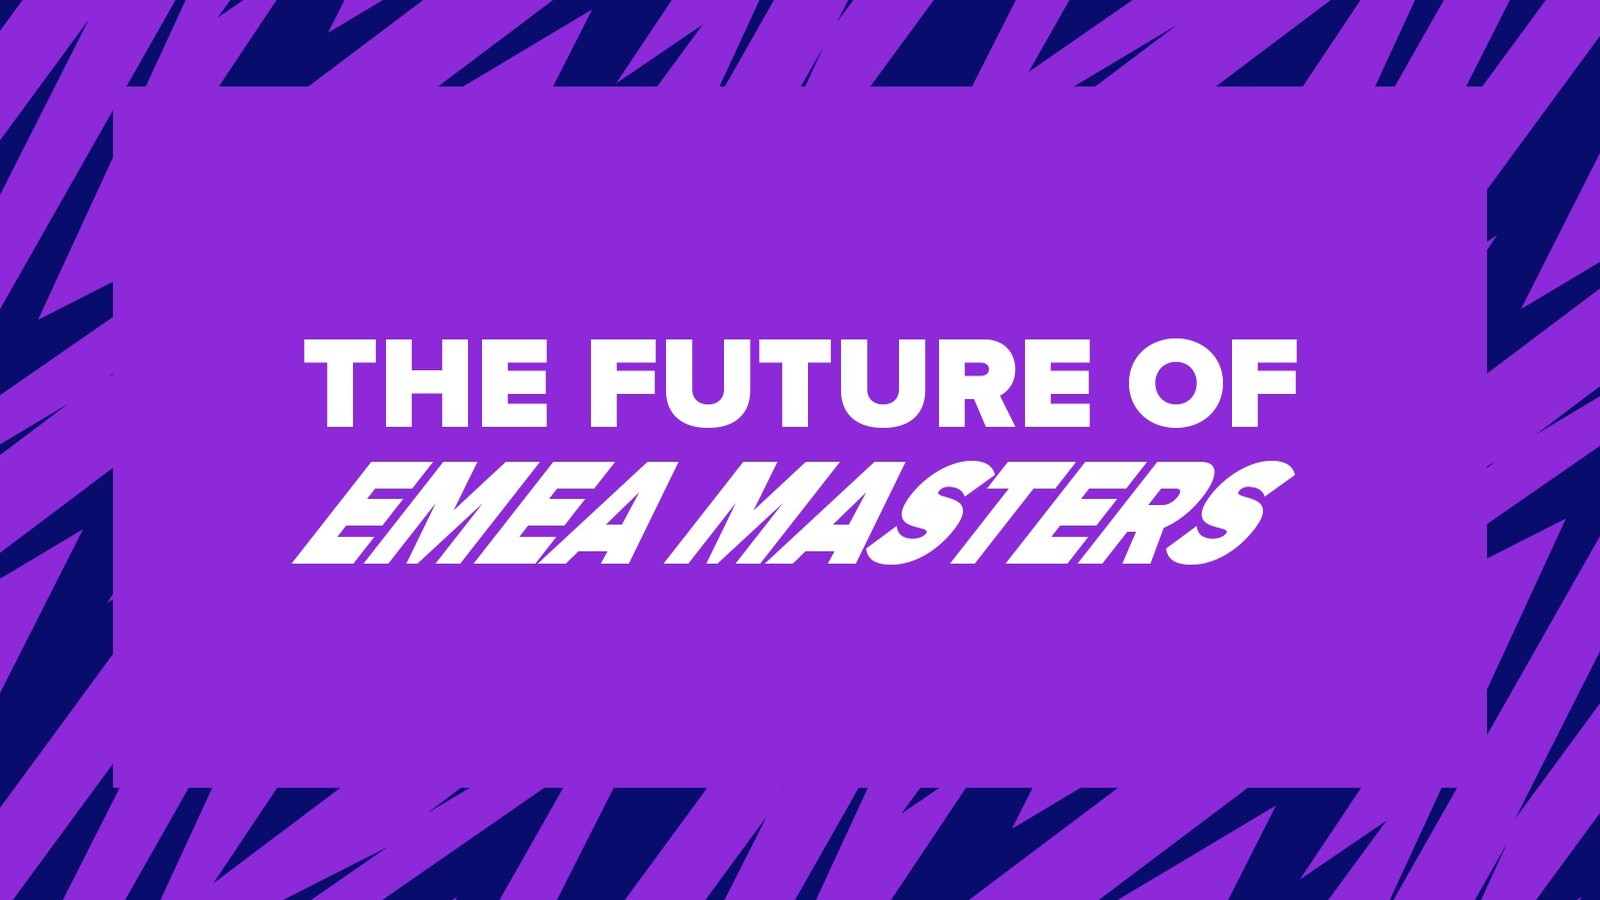 Conhece o novo formato do EMEA Masters